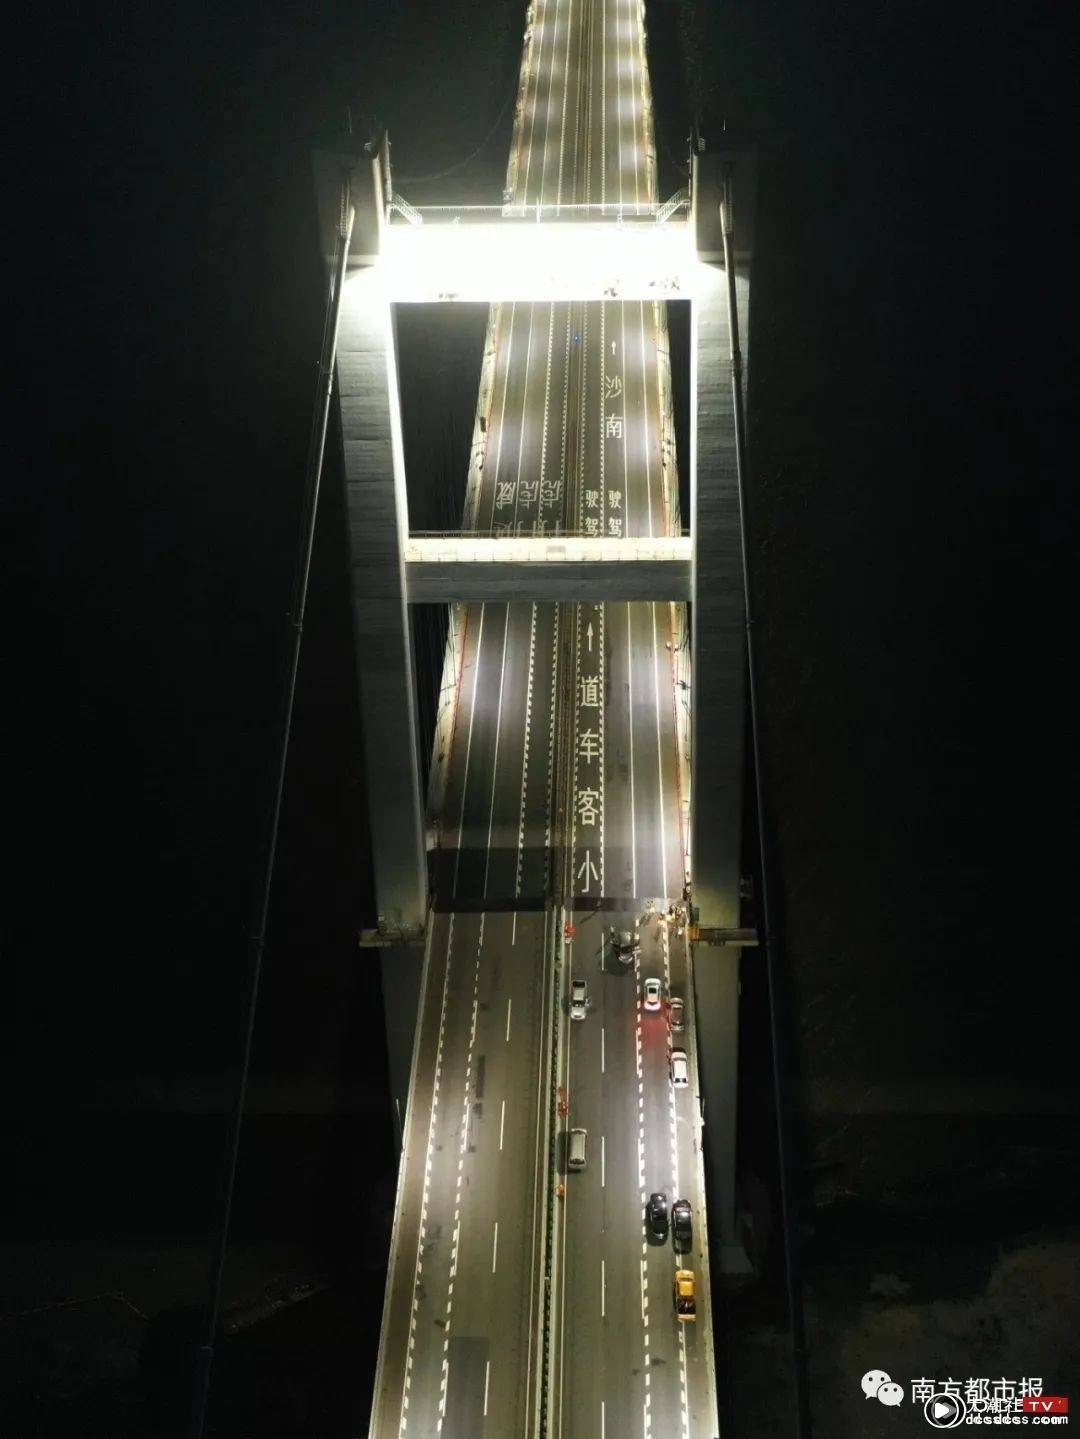 虎门大桥桥面振动，12专家连夜研判！详细解释来了